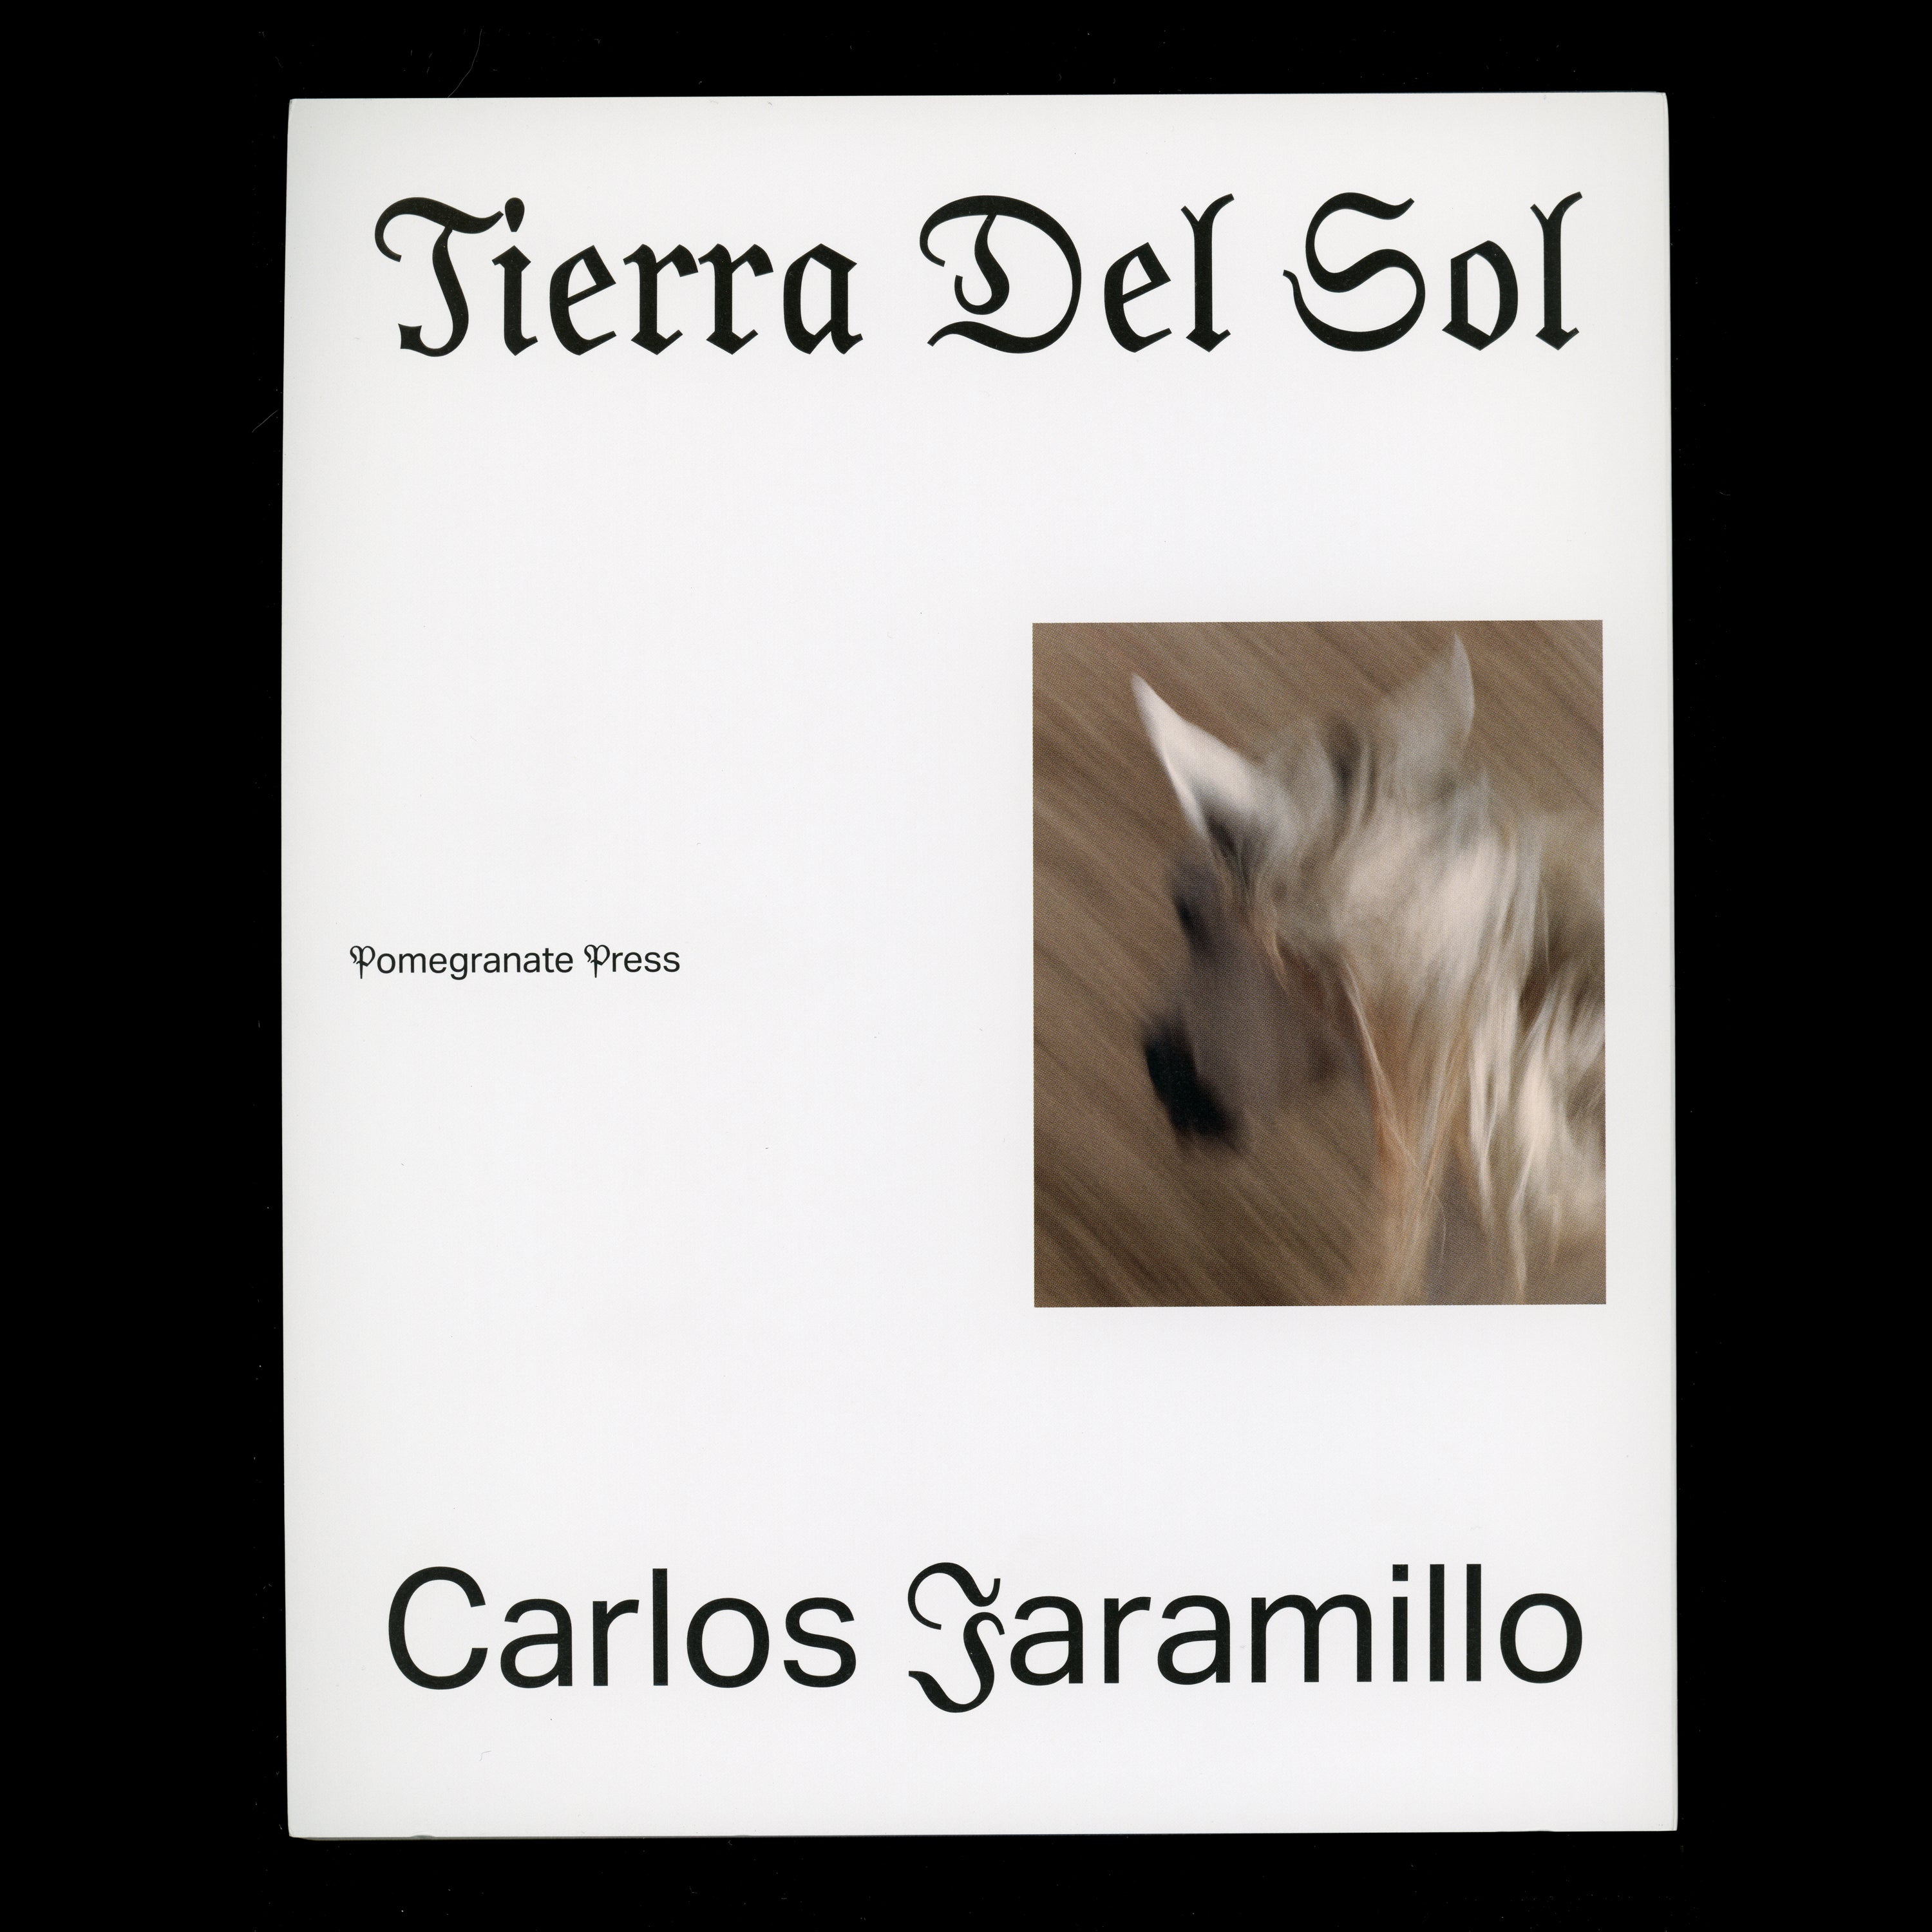 TIERRA DEL SOL by Carlos Jaramillo, Pomegranate Press